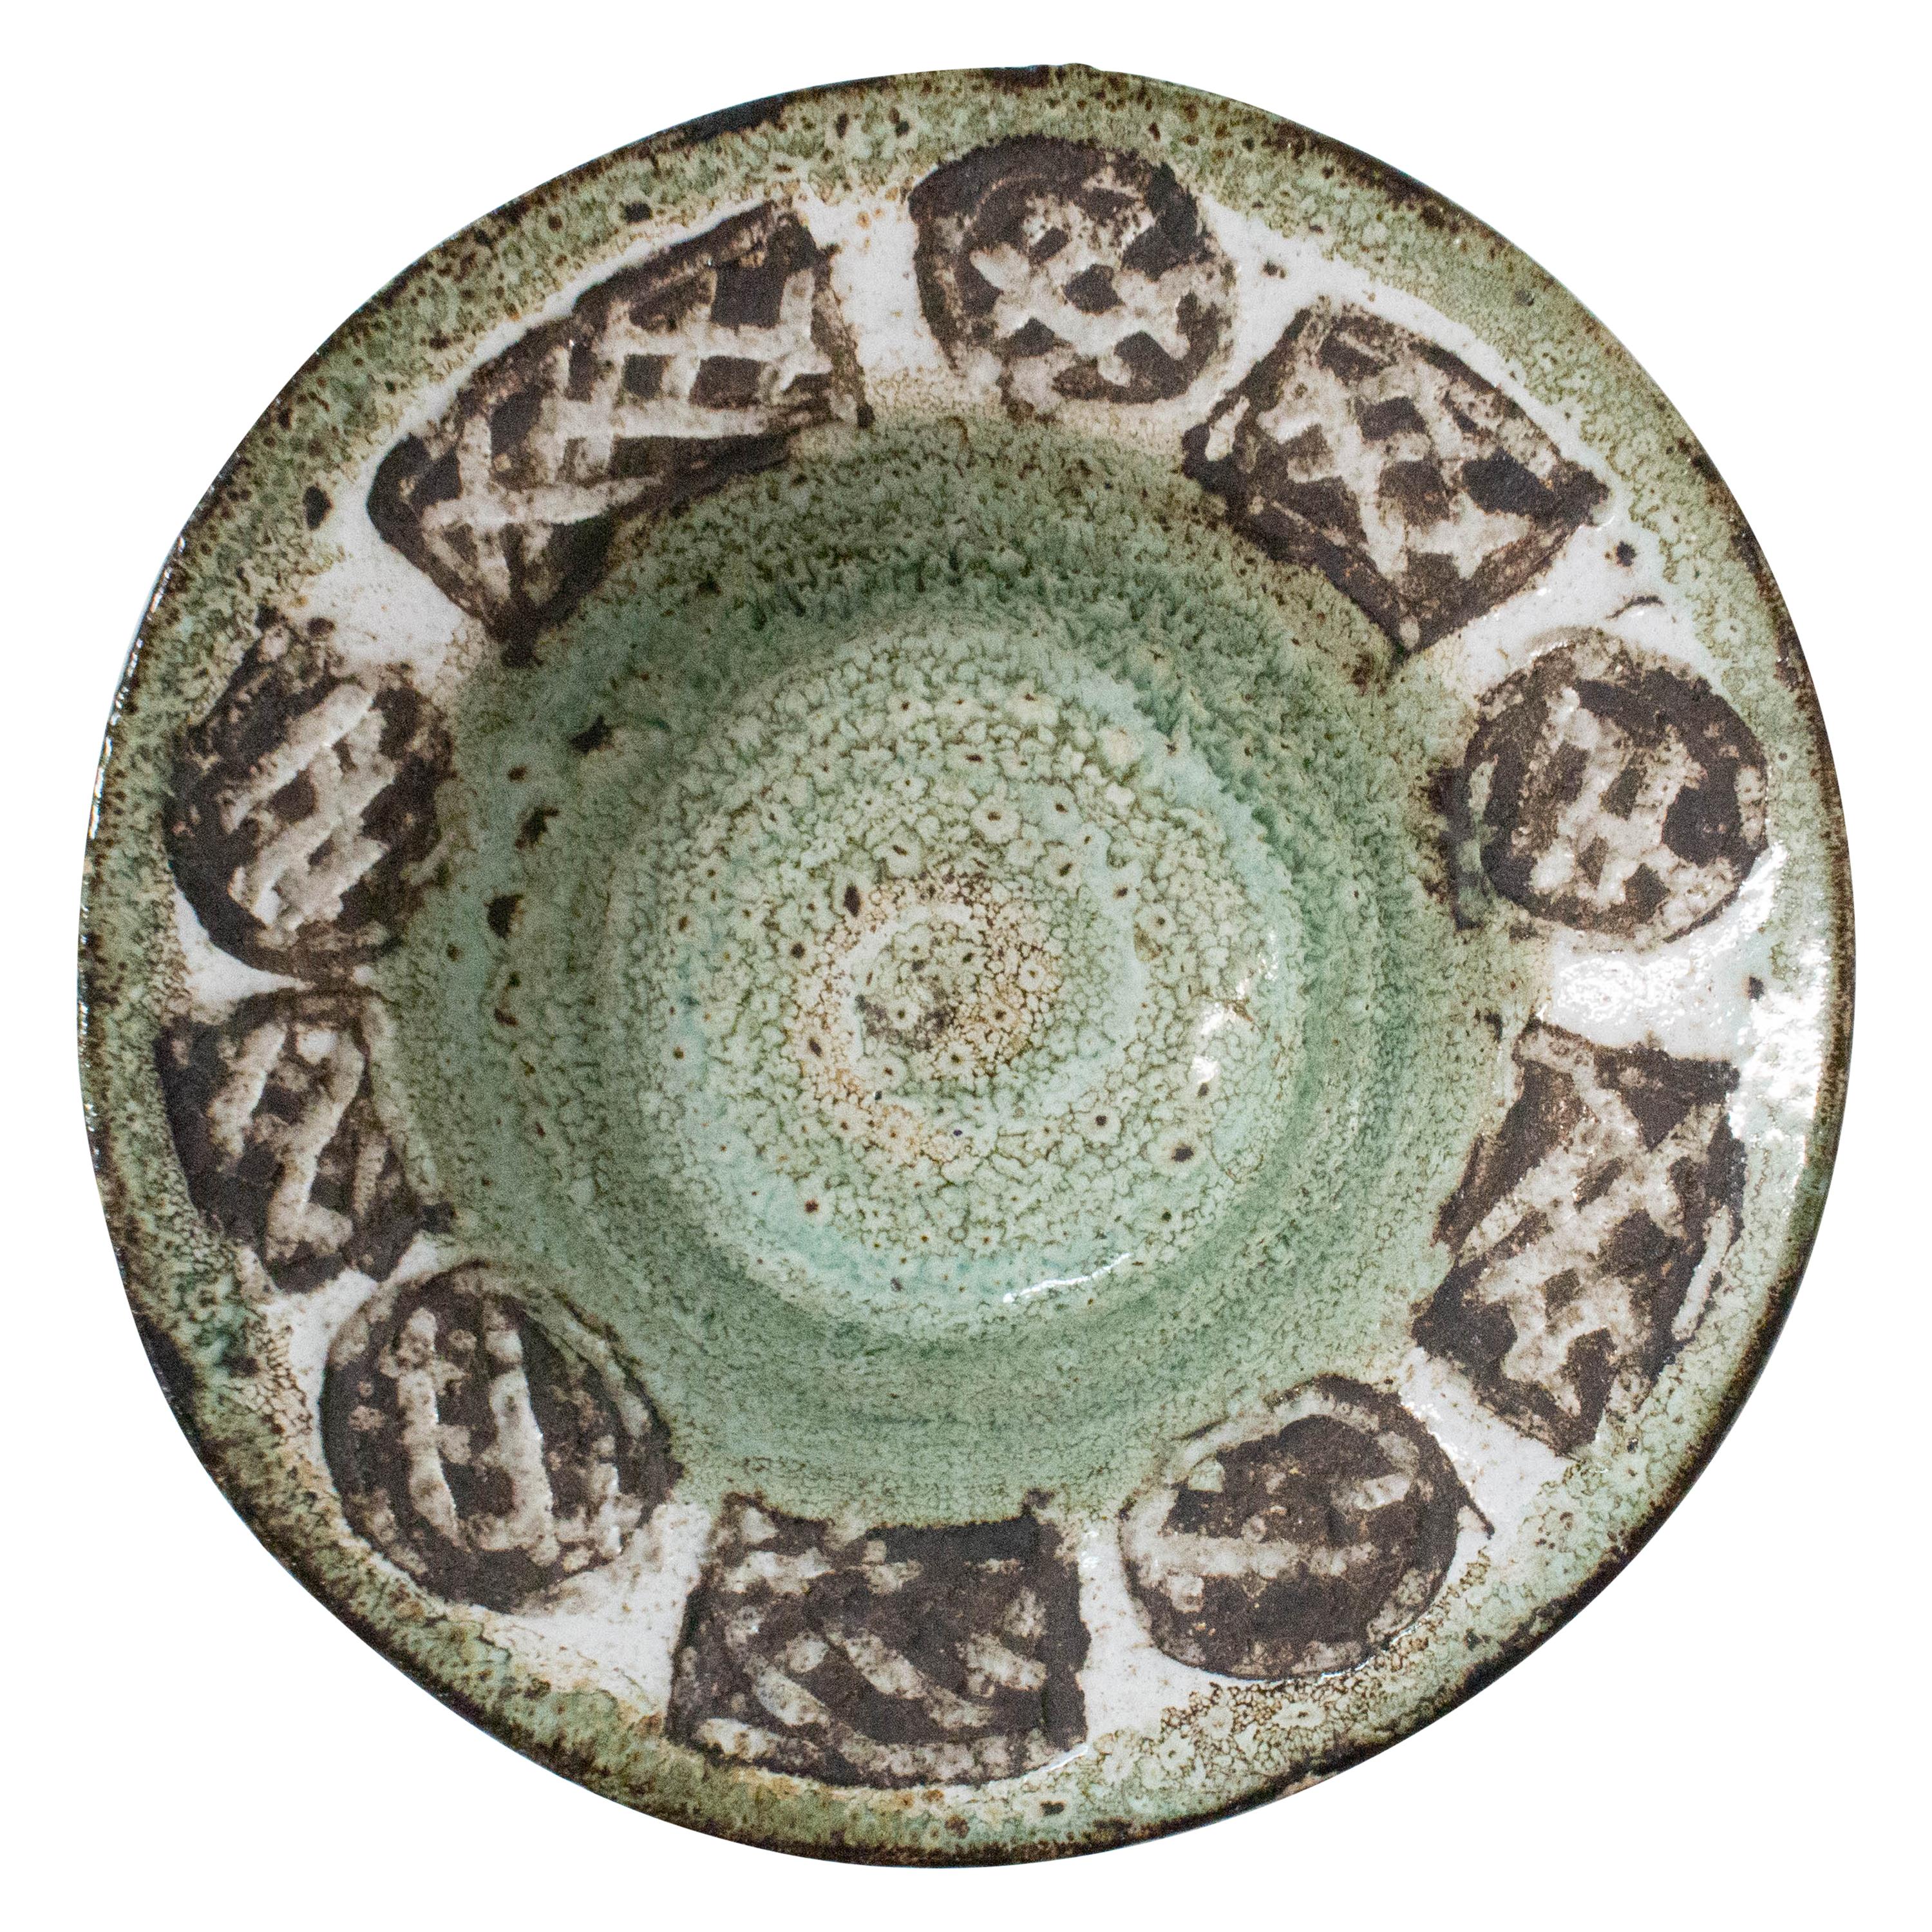 Vallauris Serving Platter or Centerpiece Textured Patterns Midcentury